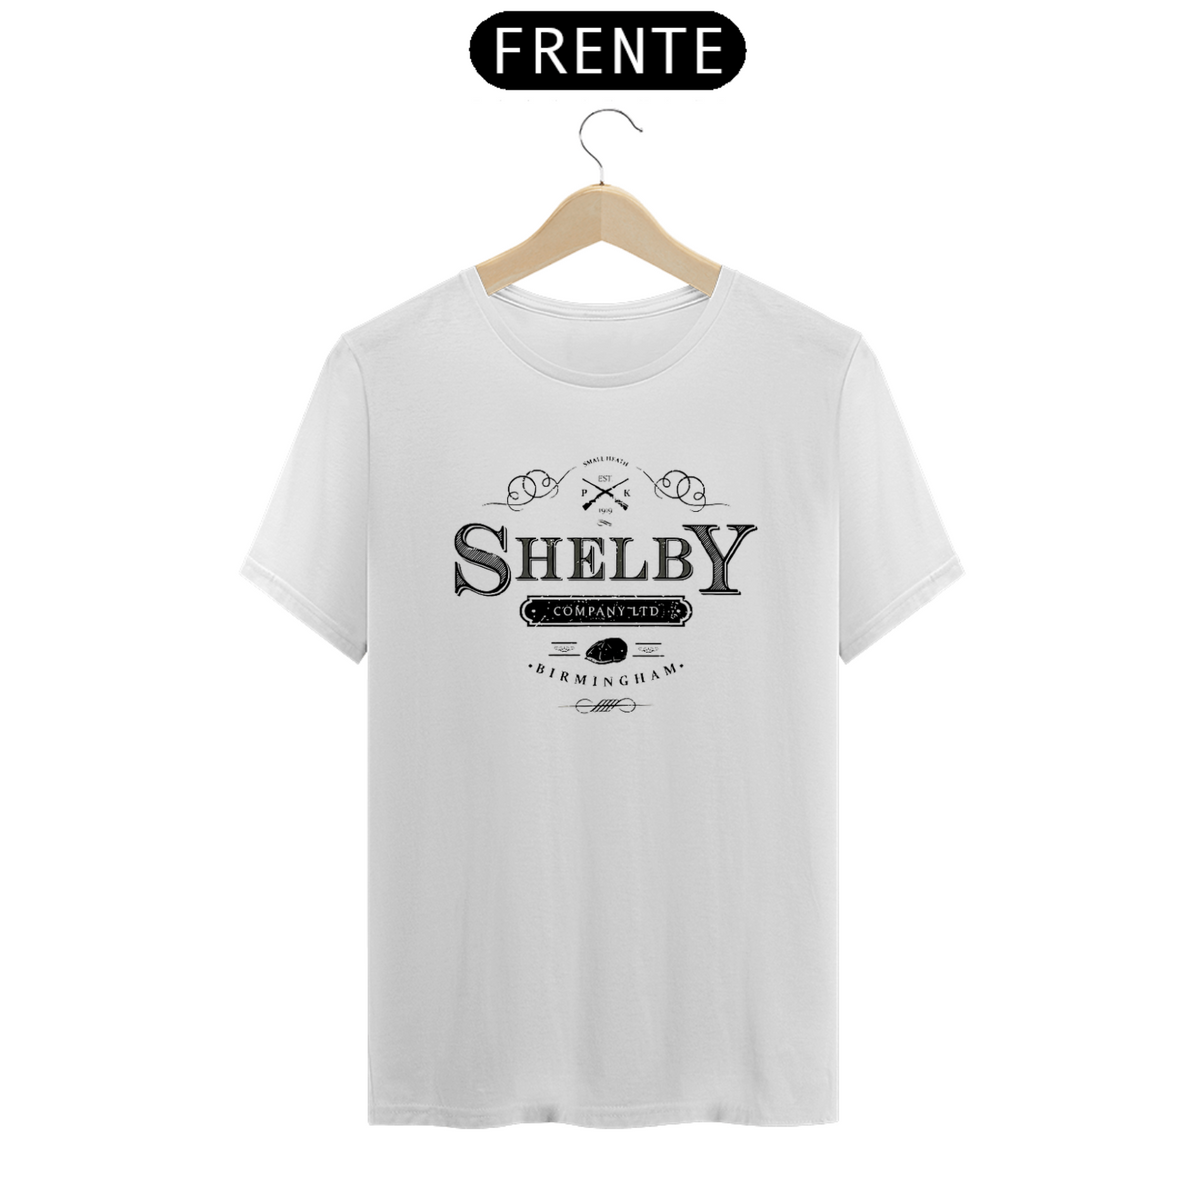 Nome do produto: Shelby - Peaky Blinders